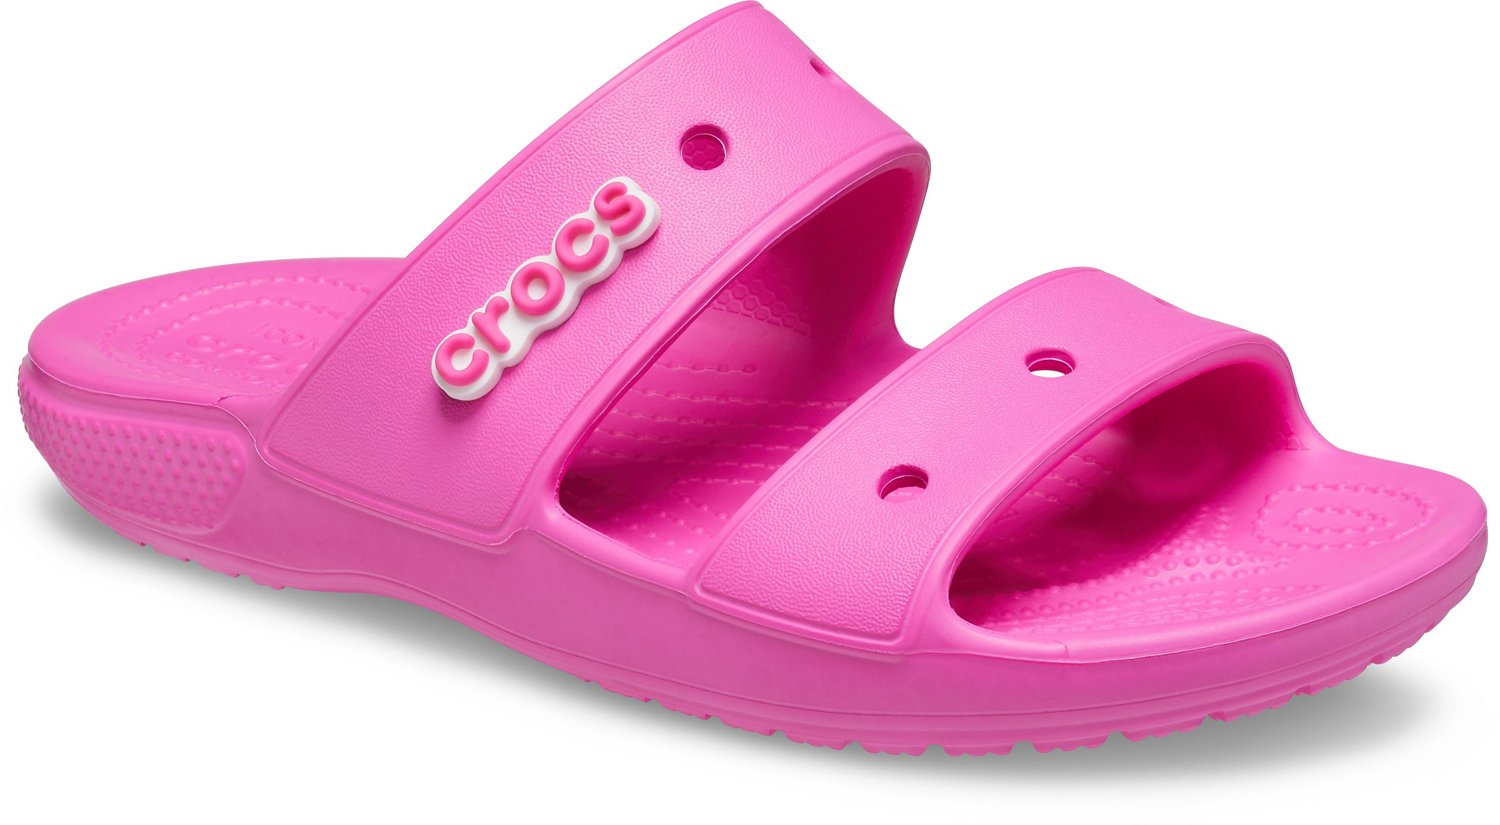 crocs 2 strap sandals